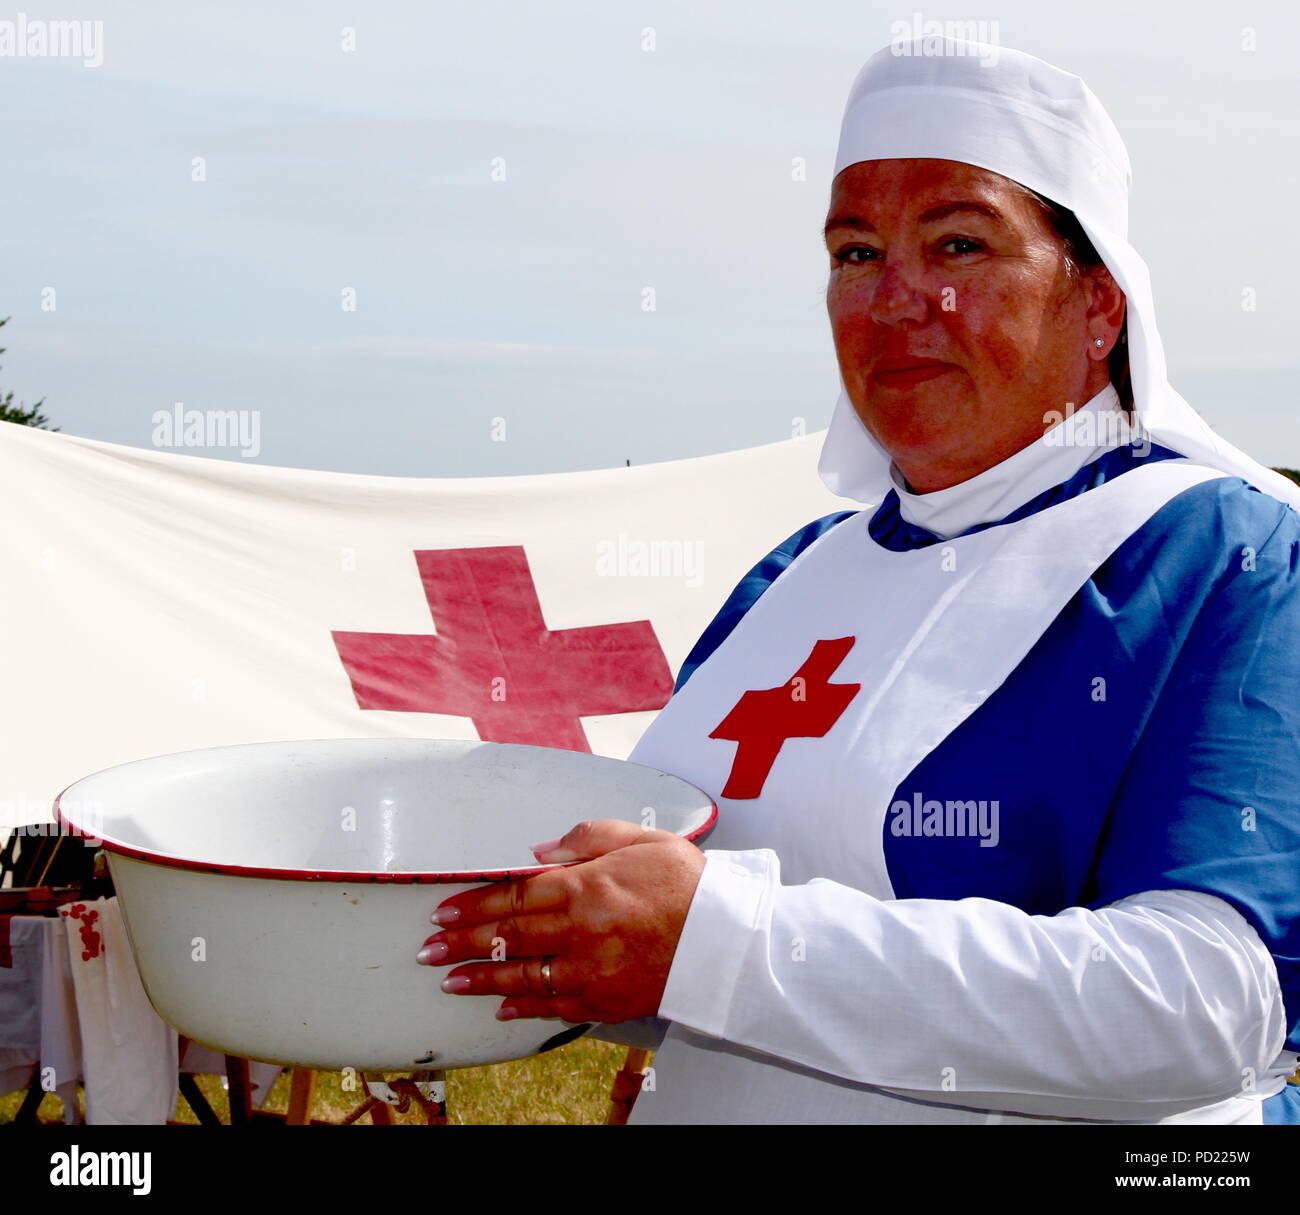 Churston Devon, England: Eine Krankenschwester des Roten Kreuzes aus dem Ersten Weltkrieg repräsentiert das Leben in einem Feldlazarett auf der jährlichen Torbay Steam Fair. Stockfoto